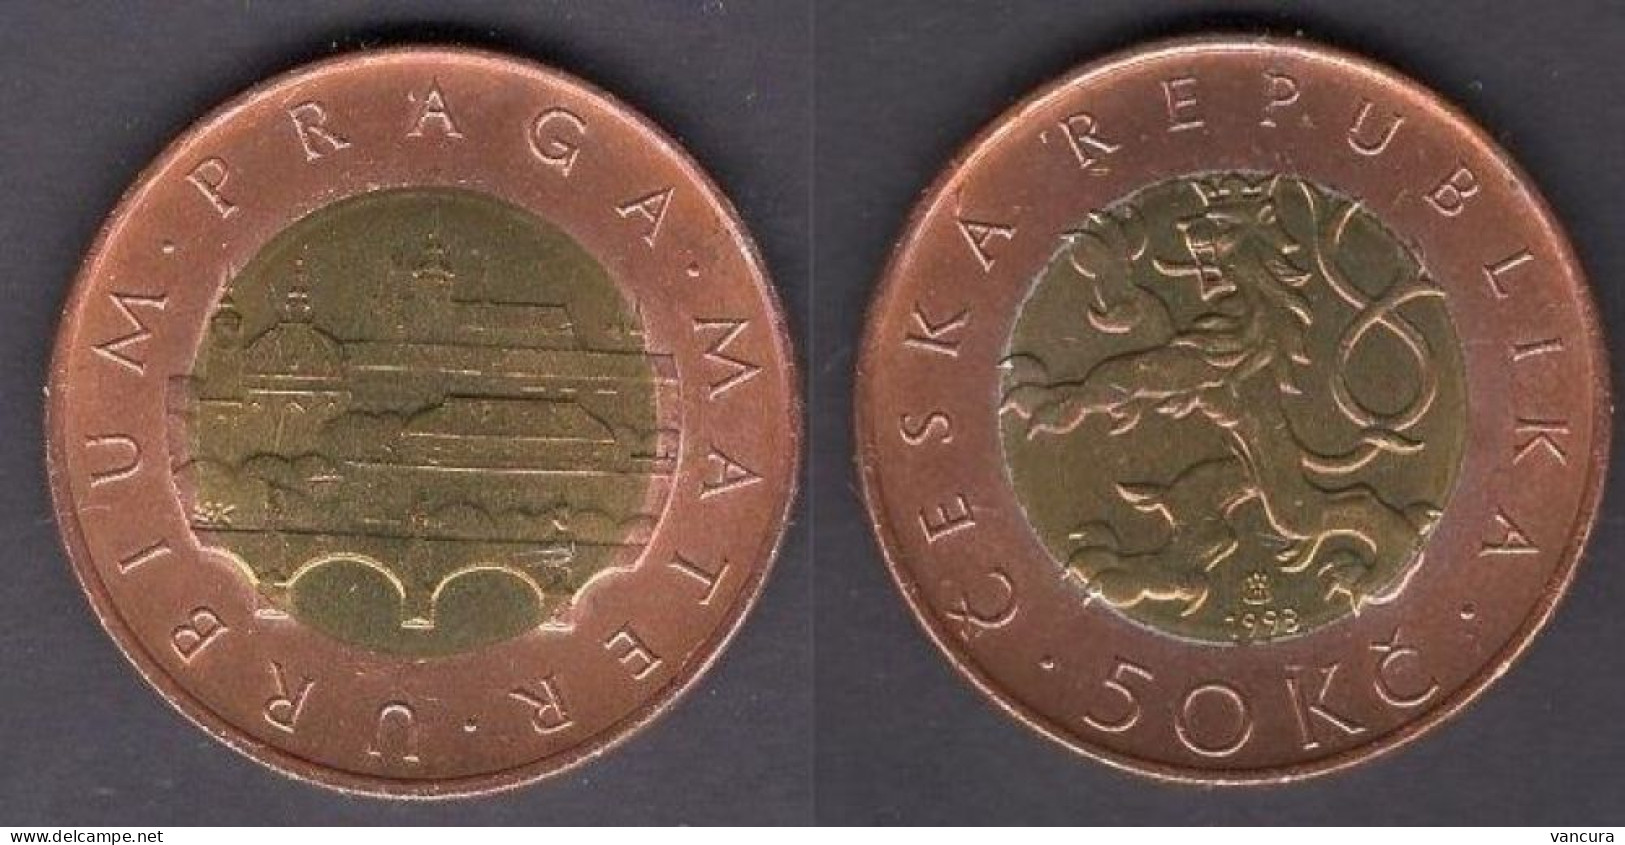 Czech Republic 50 Kc Coin 1993 BIMETALLIC Coin - Czech Republic